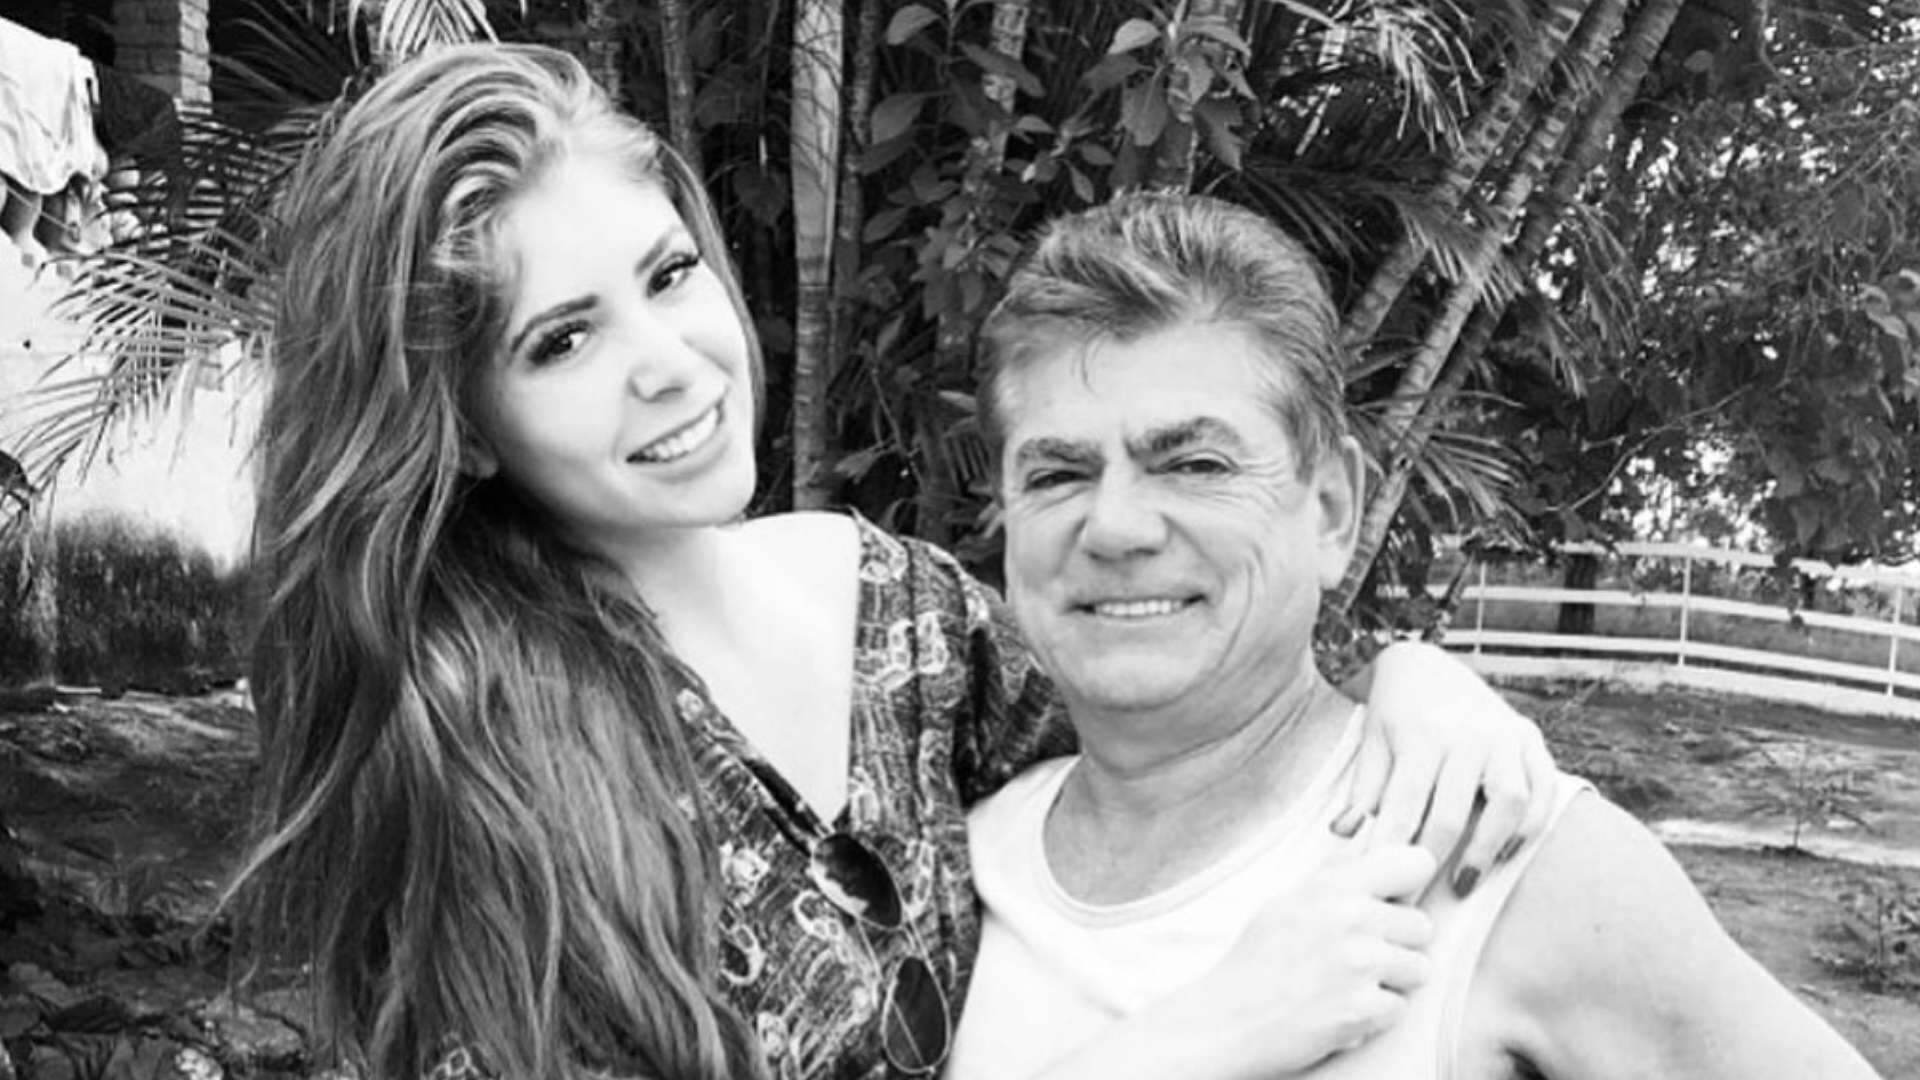 Pai de ex-BBB morre após acidente trágico em Goiás: “Ainda sem acreditar” - Metropolitana FM